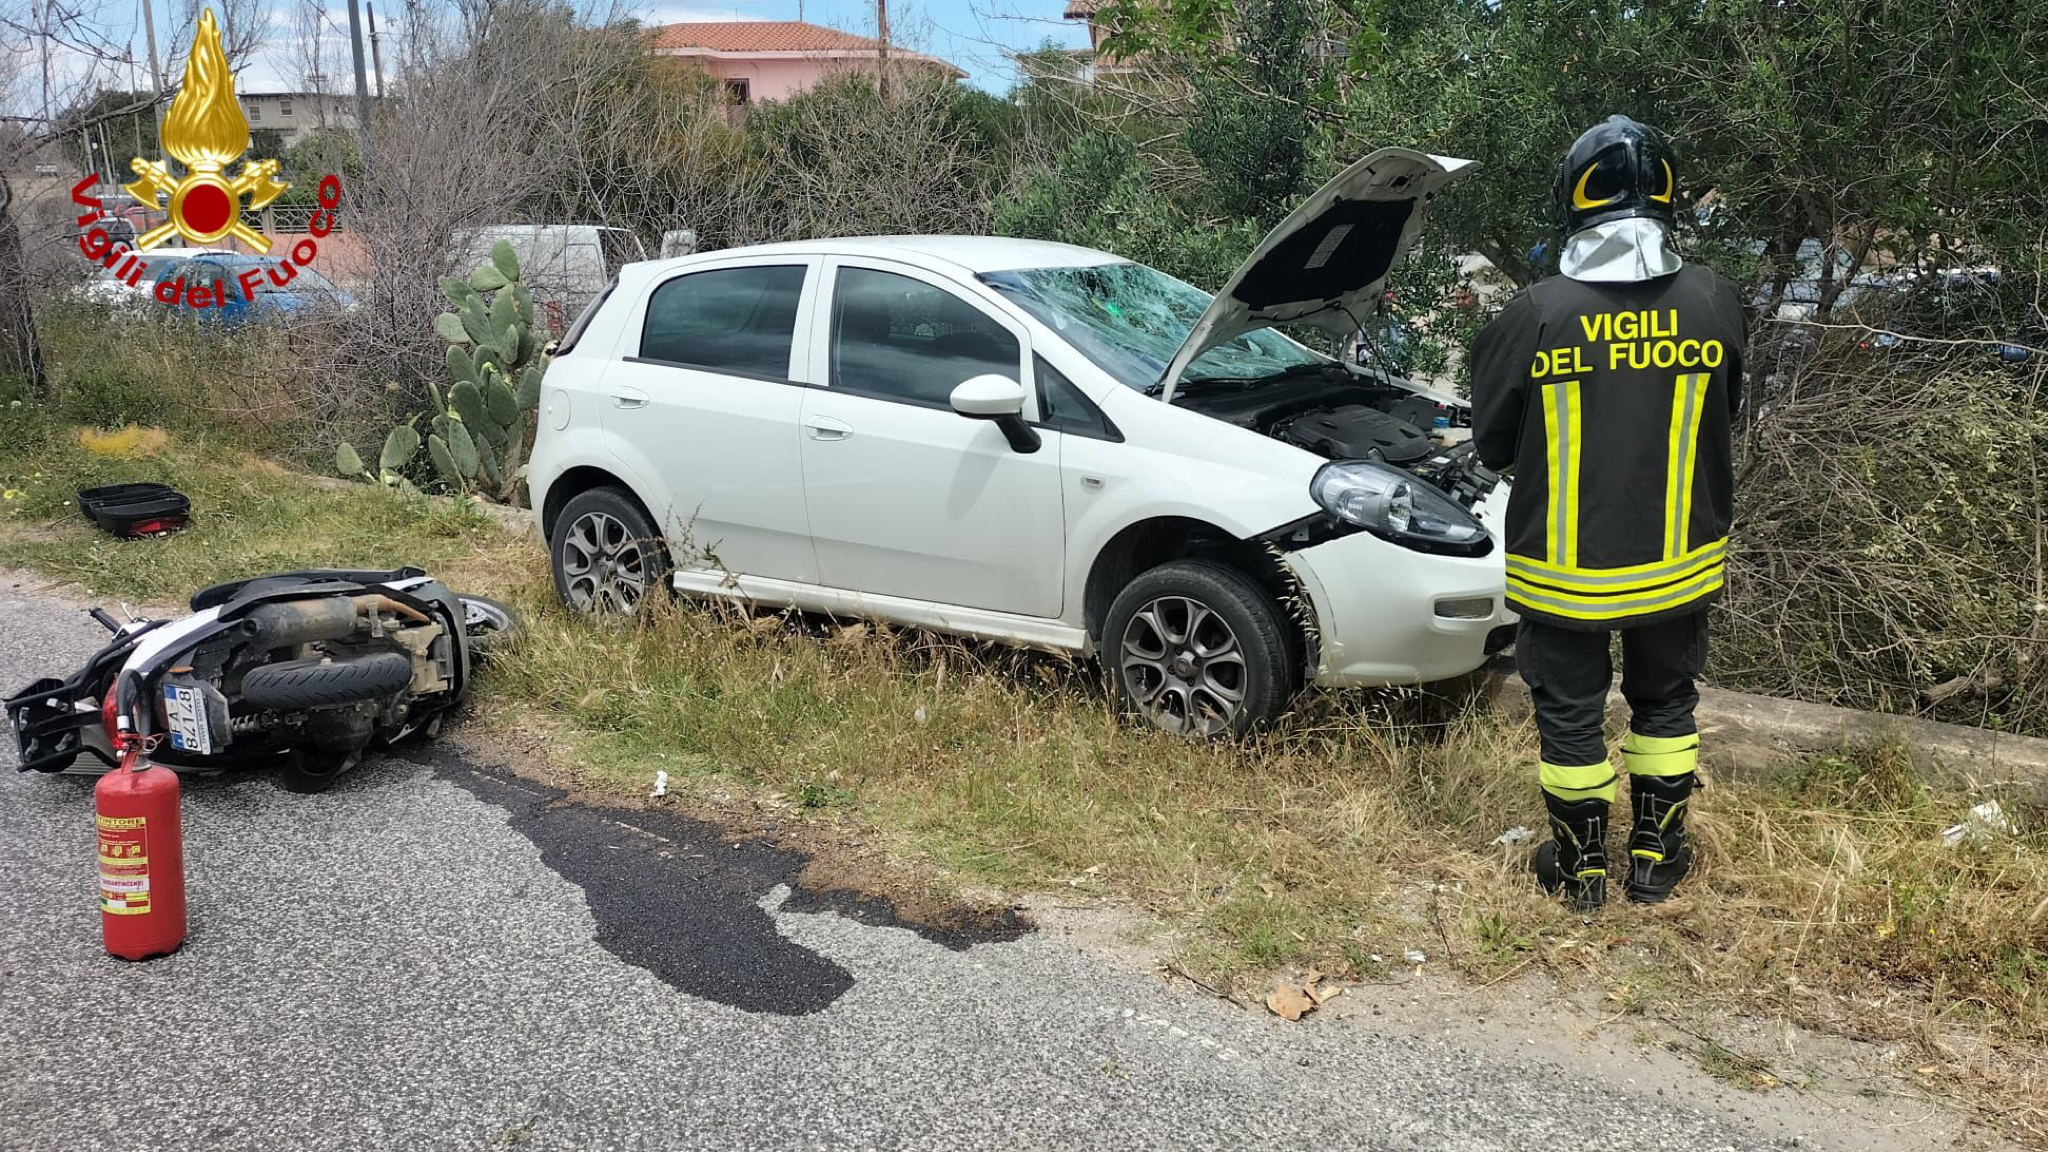 Scontro frontale tra auto e moto: uno dei conducenti trasportato in ospedale ad Olbia